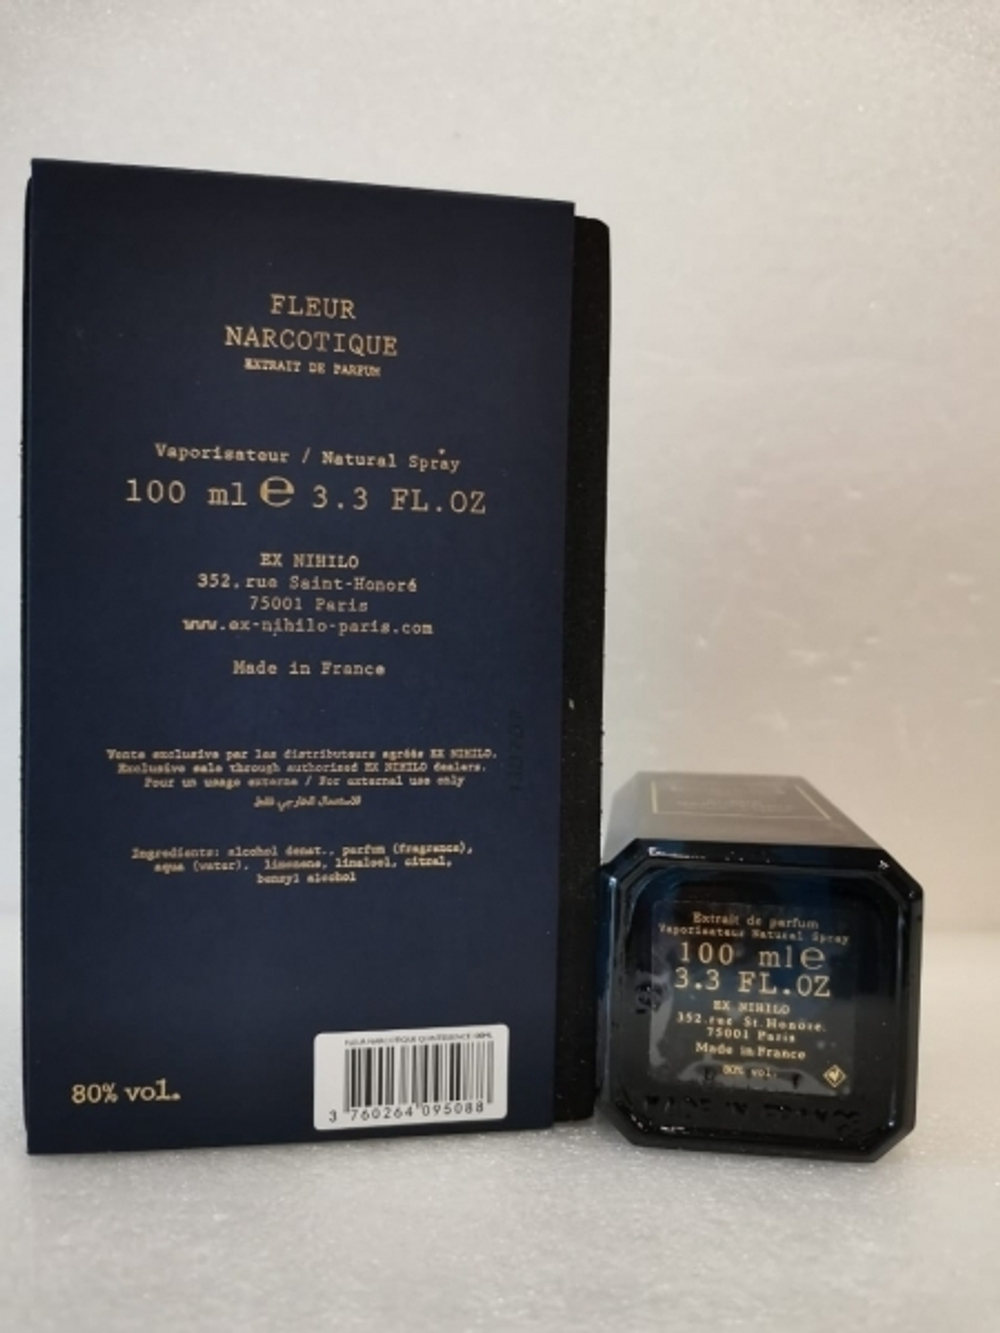 EX Nihilo Fleur Narcotique Extrait De Parfum 100ml  (duty free парфюмерия)